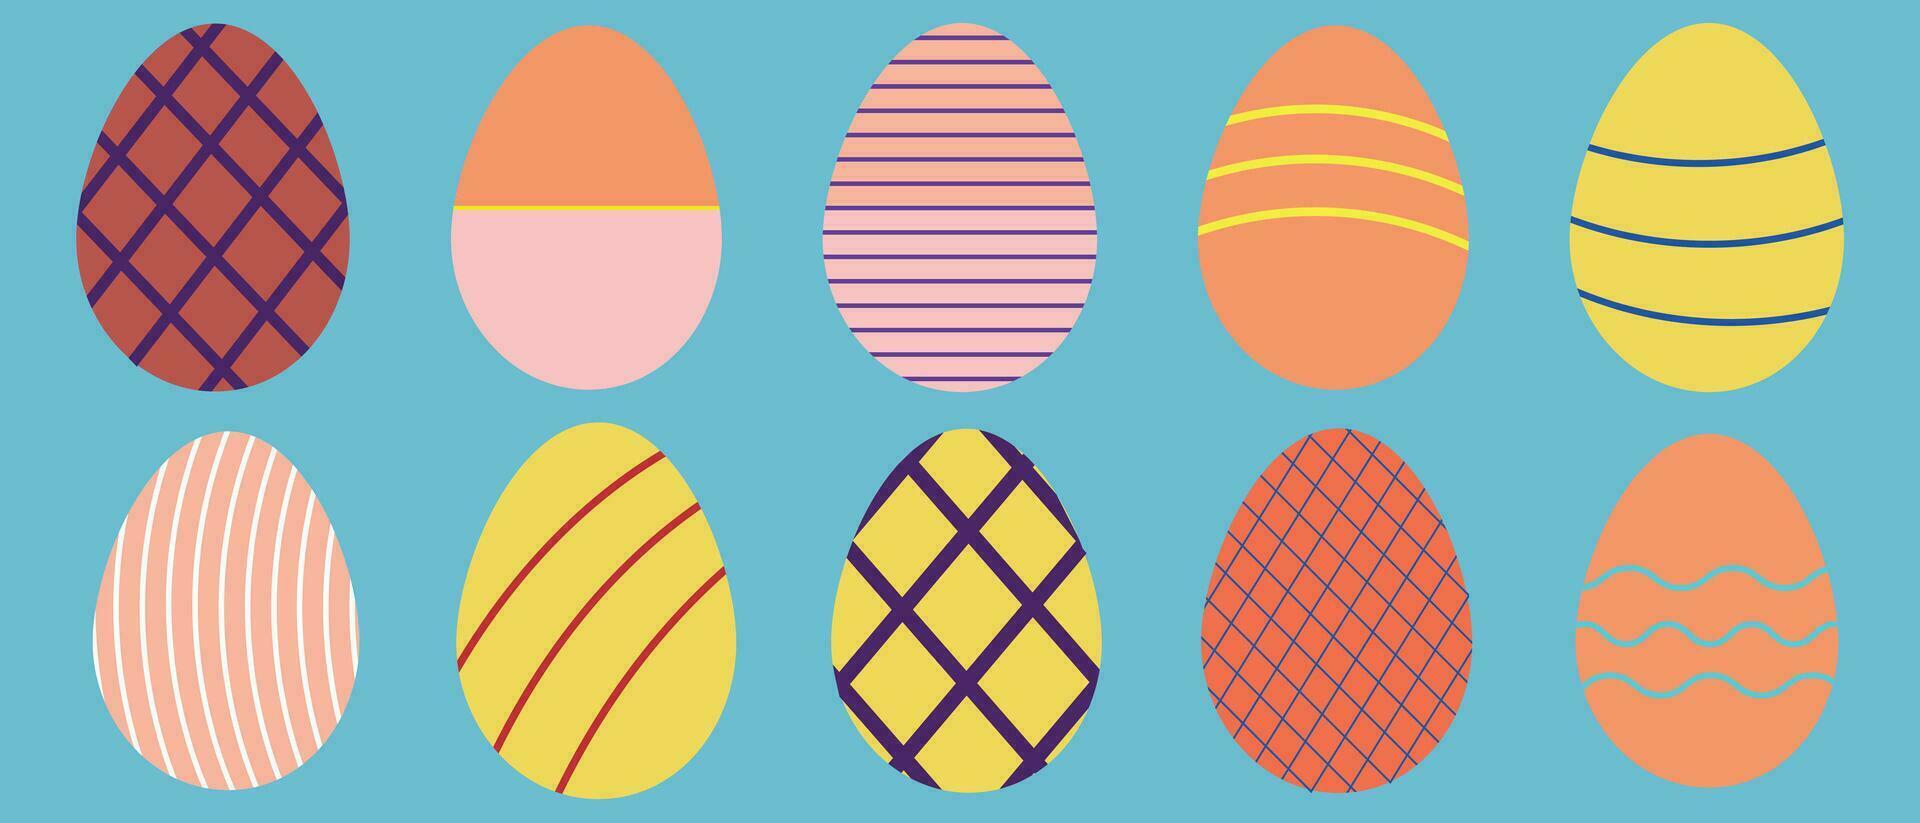 reeks van Pasen eieren in retro stijl kleuren met decoratie elementen. vector illustratie.